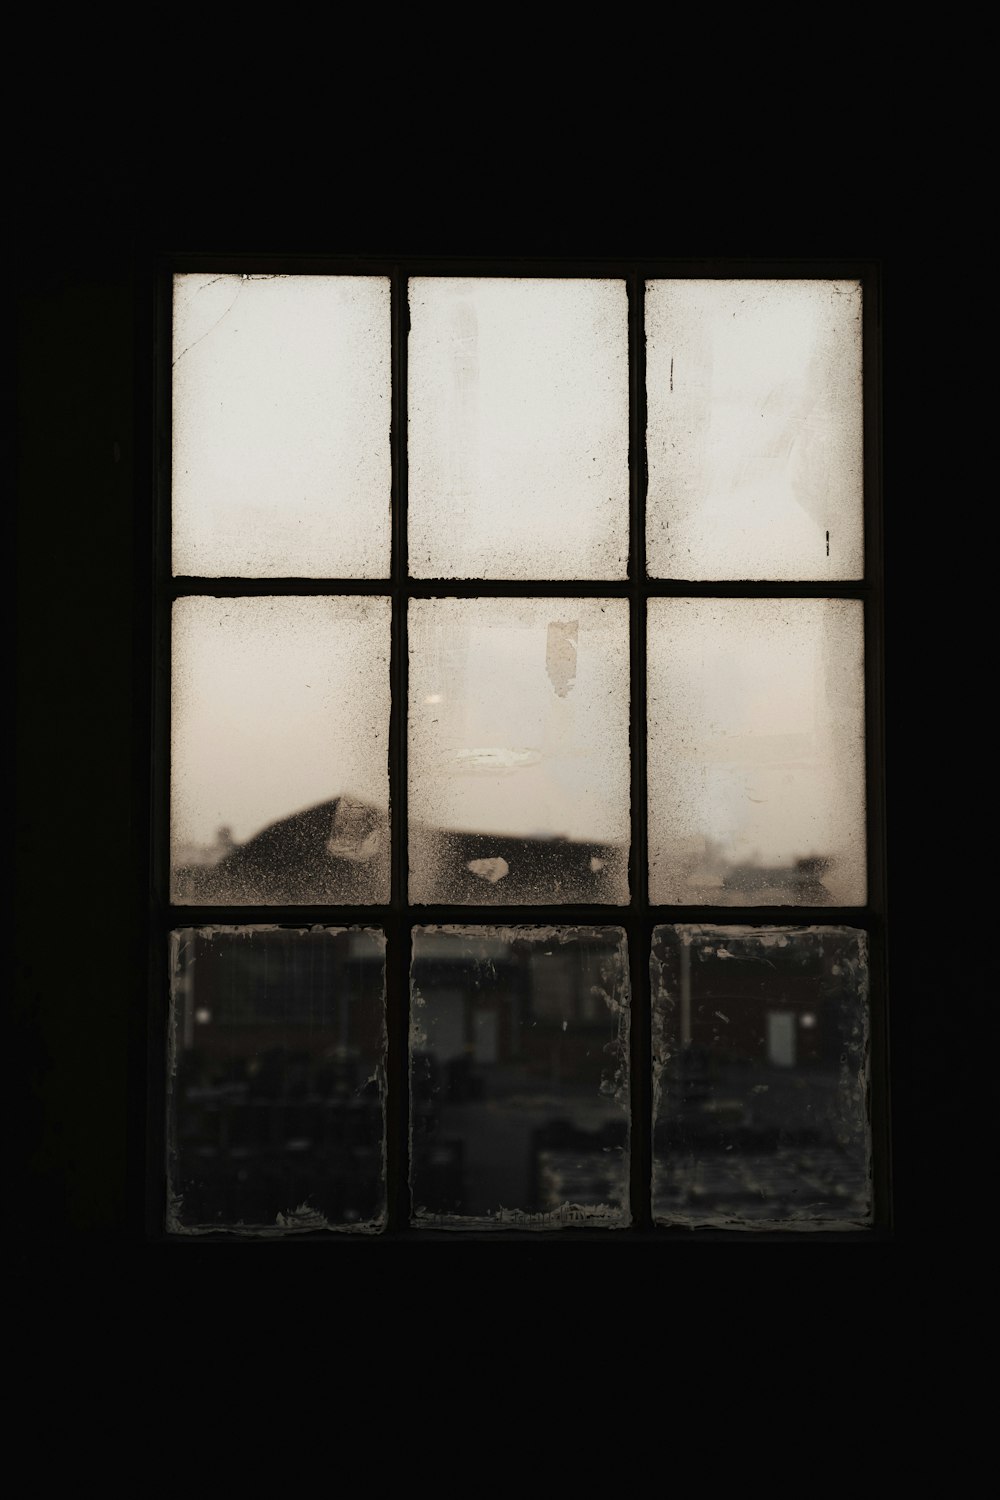 janela de vidro emoldurada de madeira preta